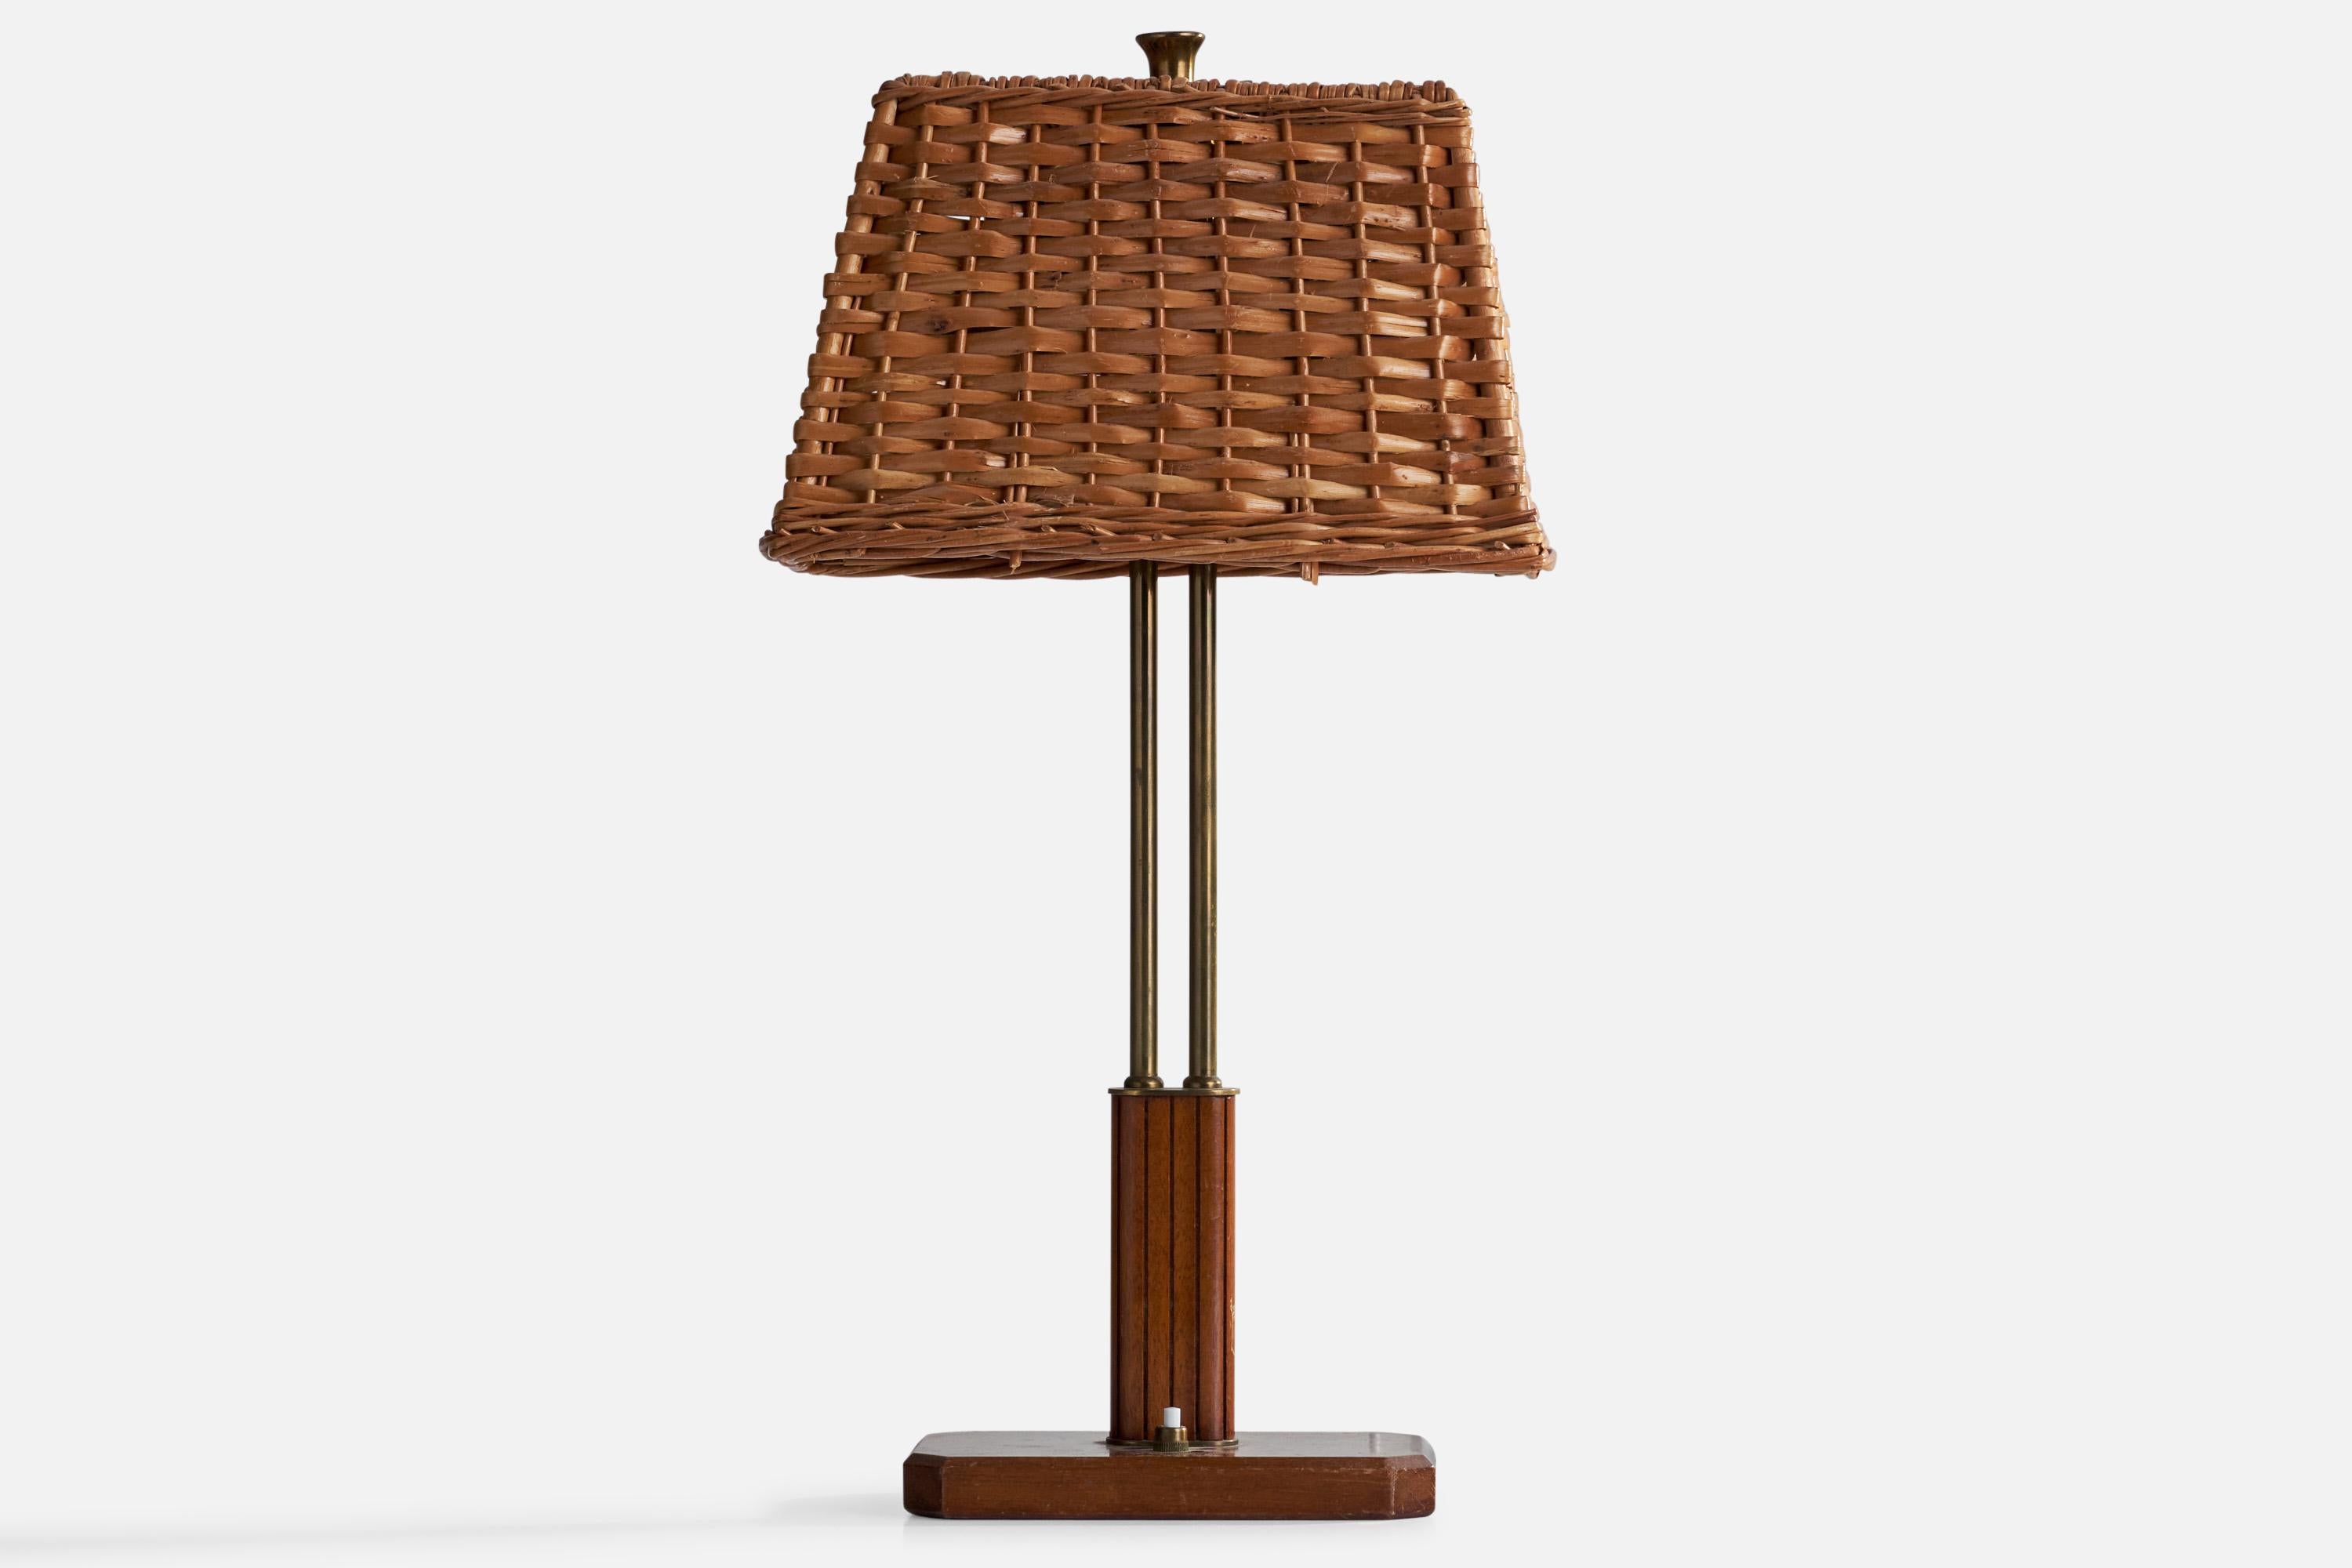 Rare lampe de table en laiton, acajou et rotin conçue par Harald Notini et produite par Böhlmarks, Suède, années 1940.

Dimensions globales (pouces) : 19